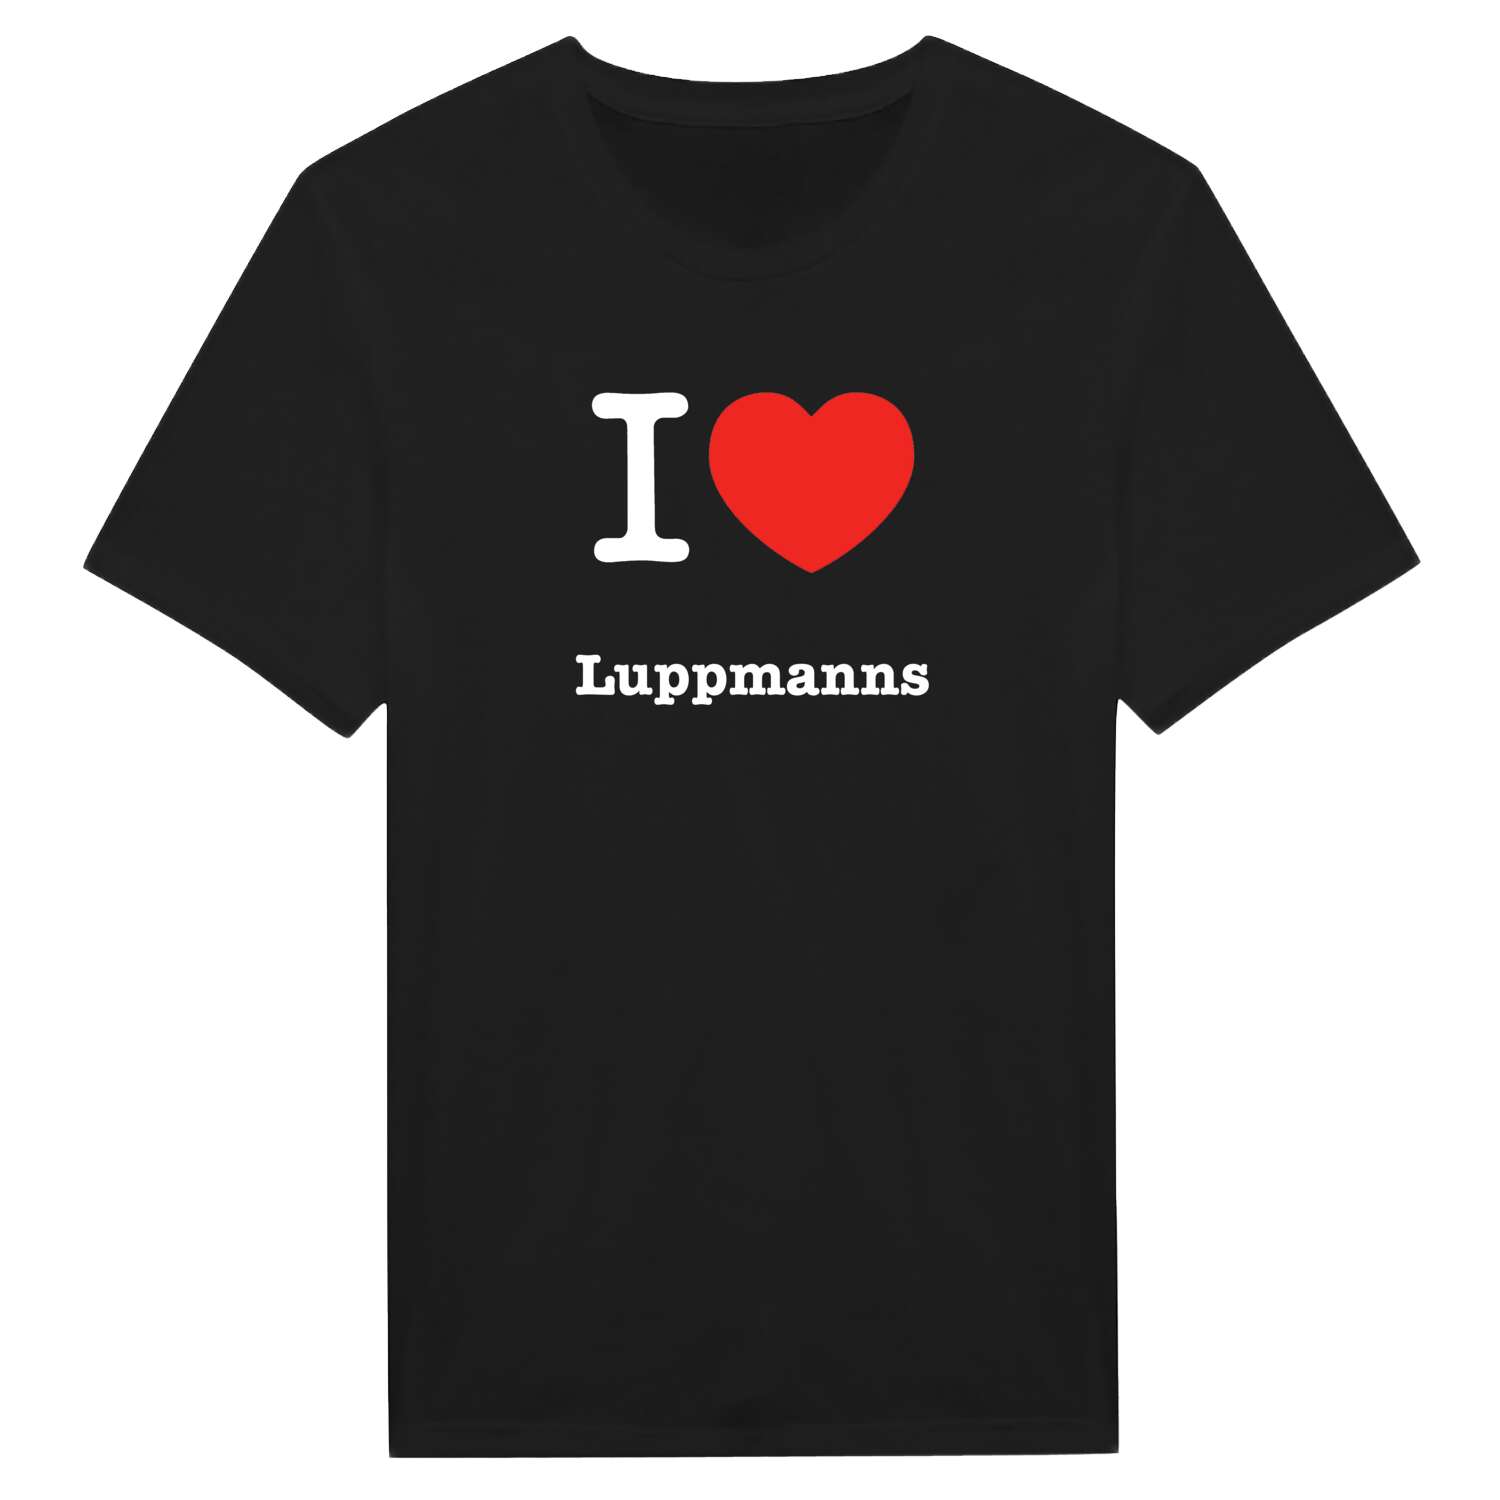 Luppmanns T-Shirt »I love«